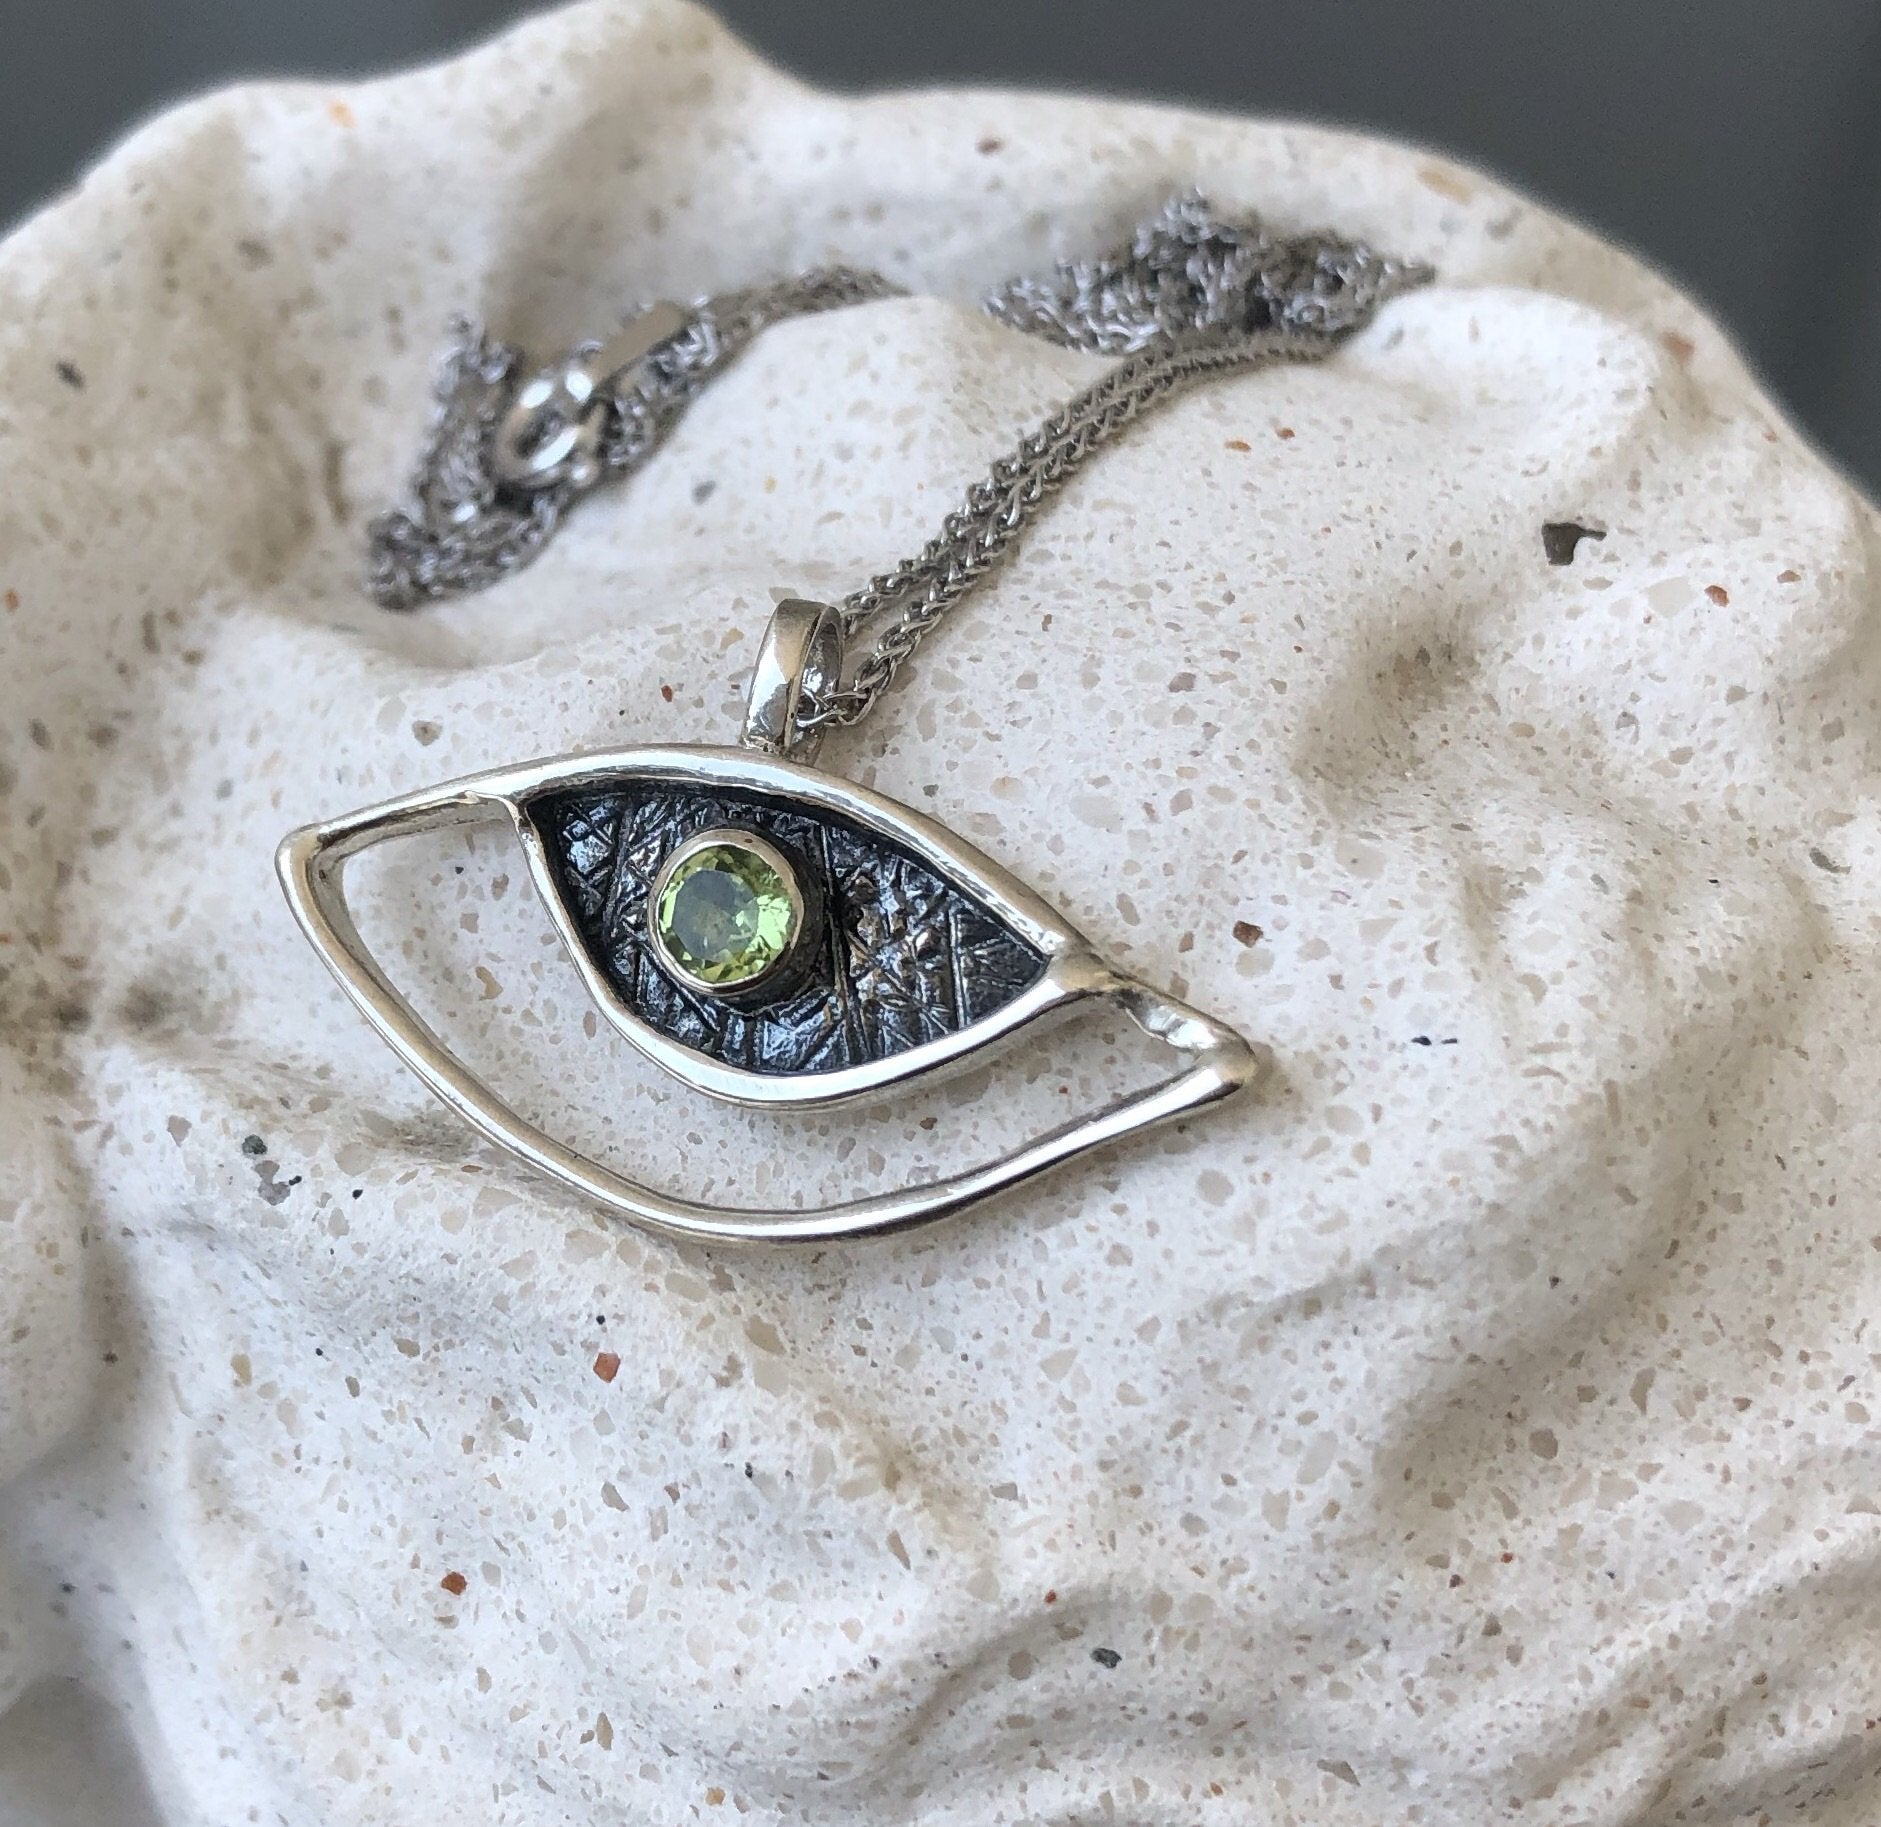 evil eye pendant, peridot pendant, silver eye pendant silver chain, eye jewelry 